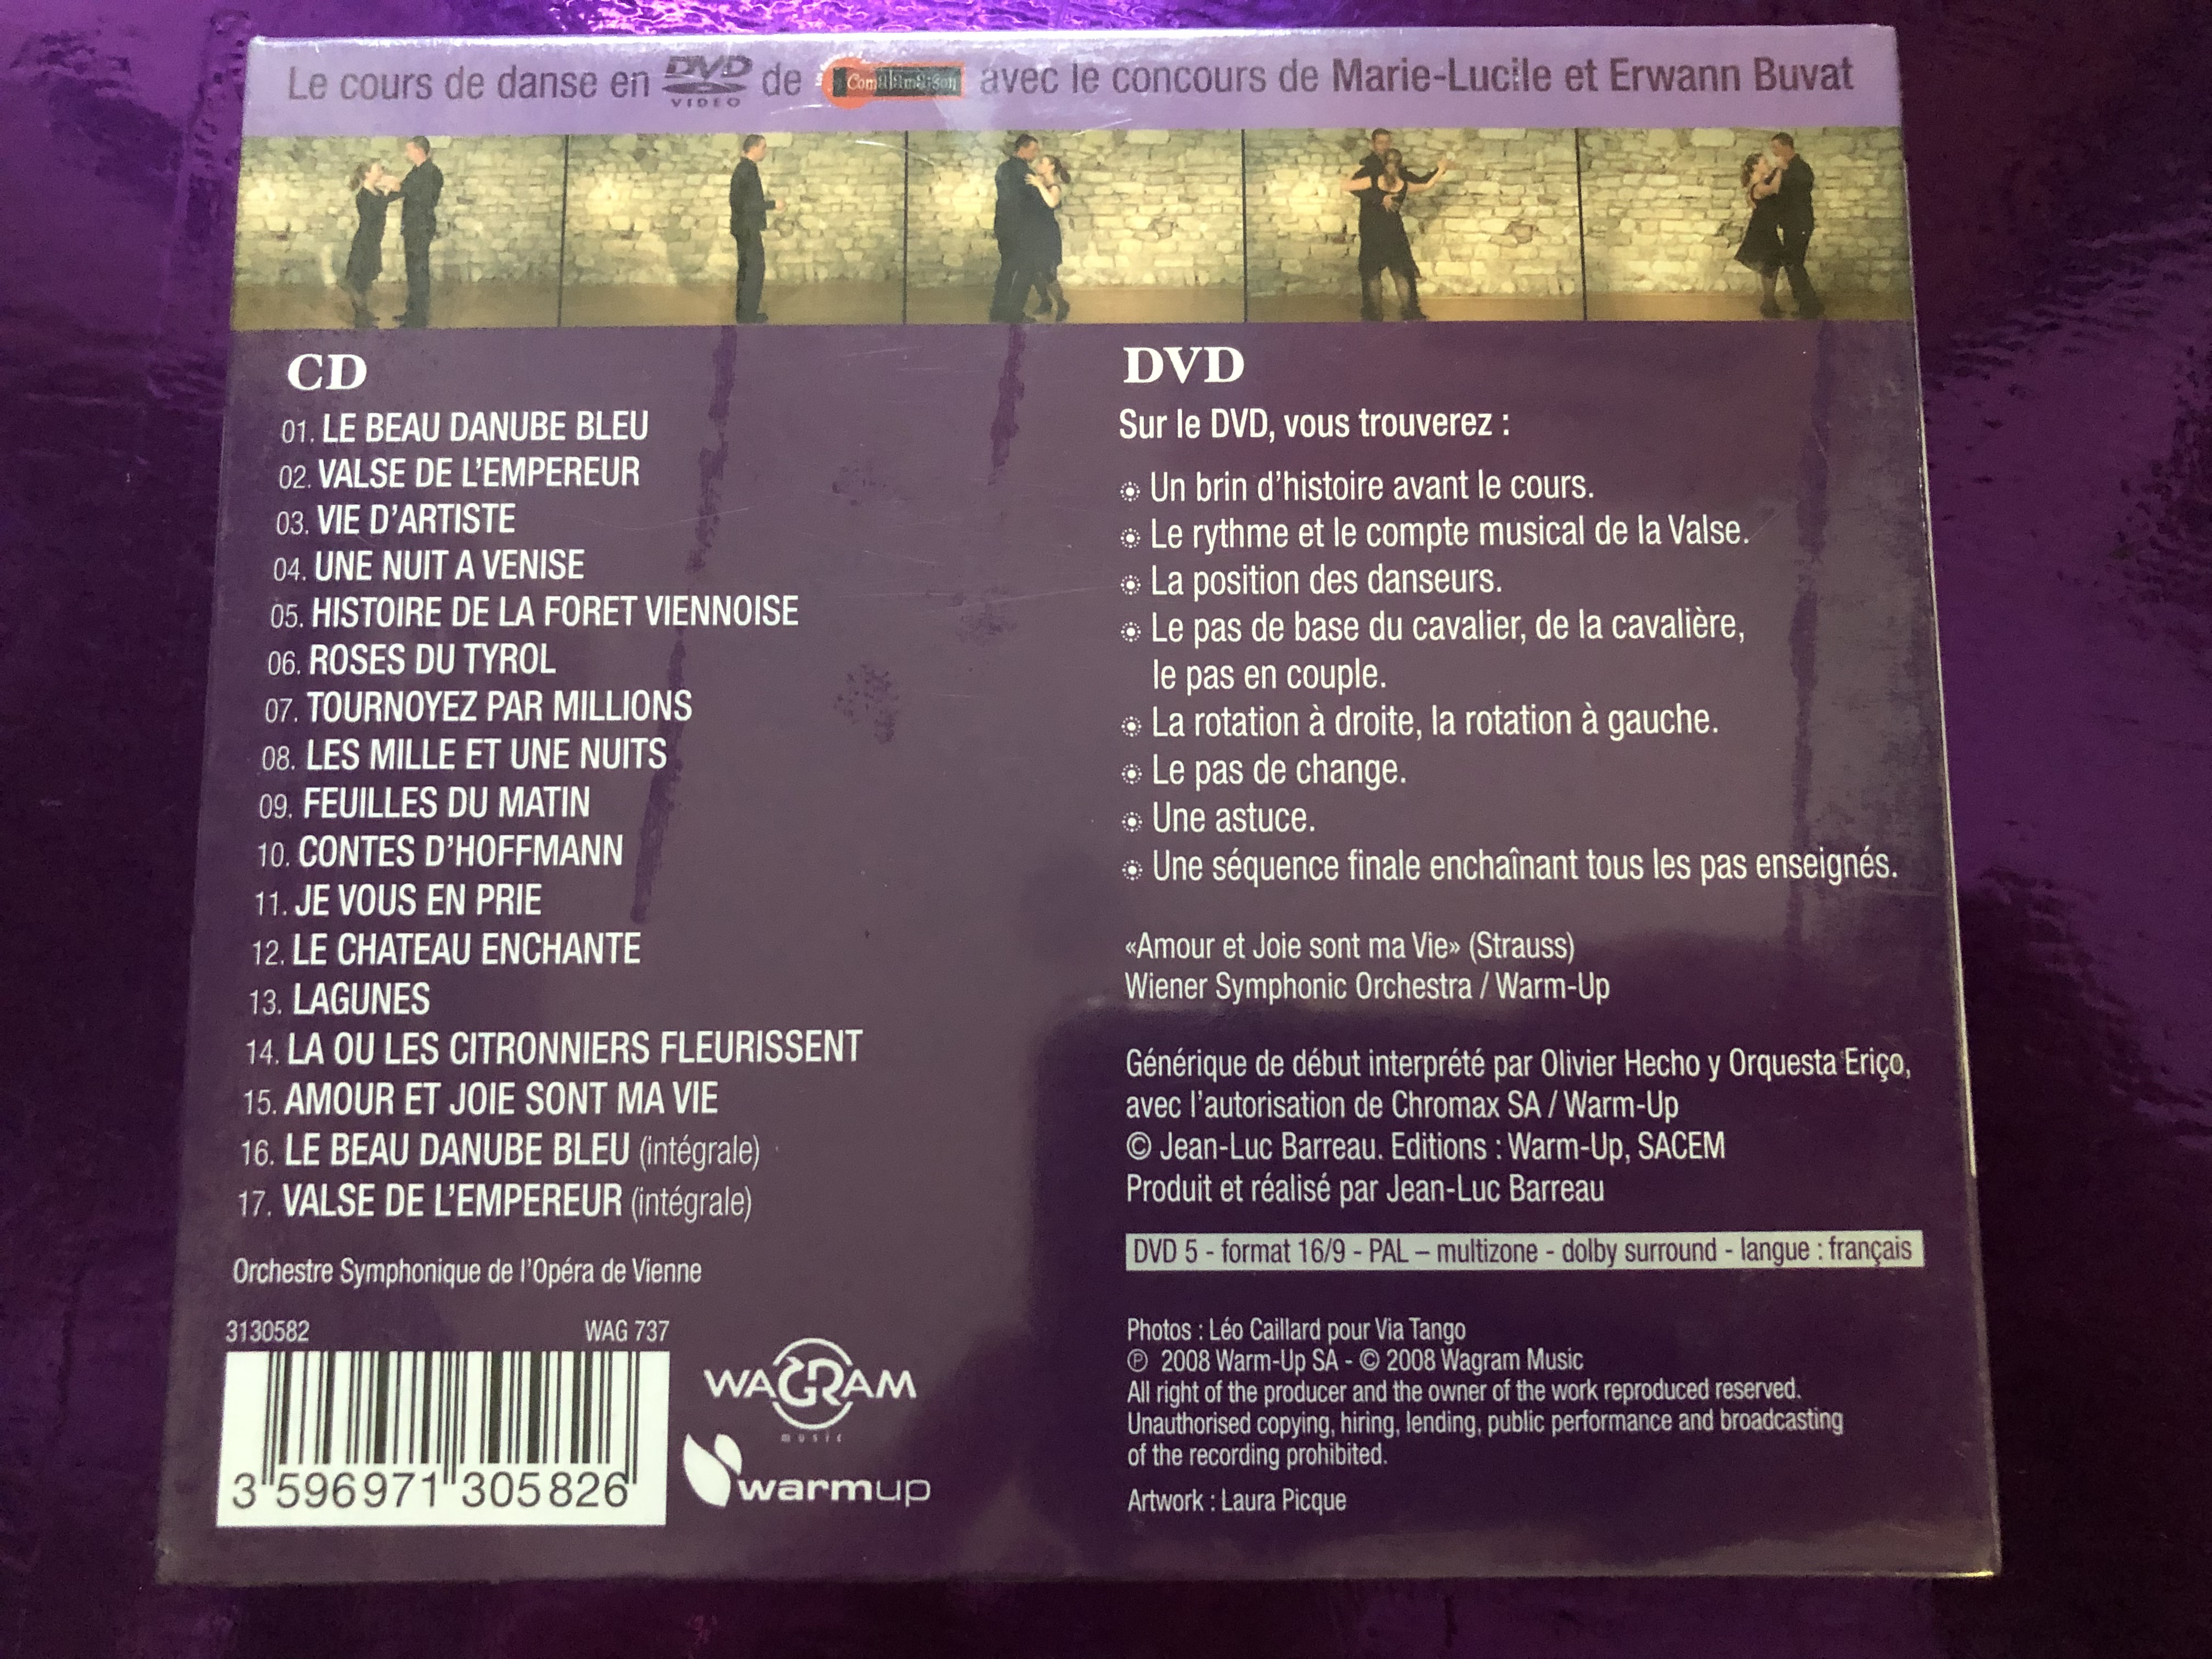 valse-collection-dansez-dansez-la-valse-cd-les-plus-grands-titres-pour-danser-la-valse-dvd-le-cours-de-danse-par-des-professionnels-wagram-music-audio-cd-dvd-cd-2008-wag-737-2-.jpg